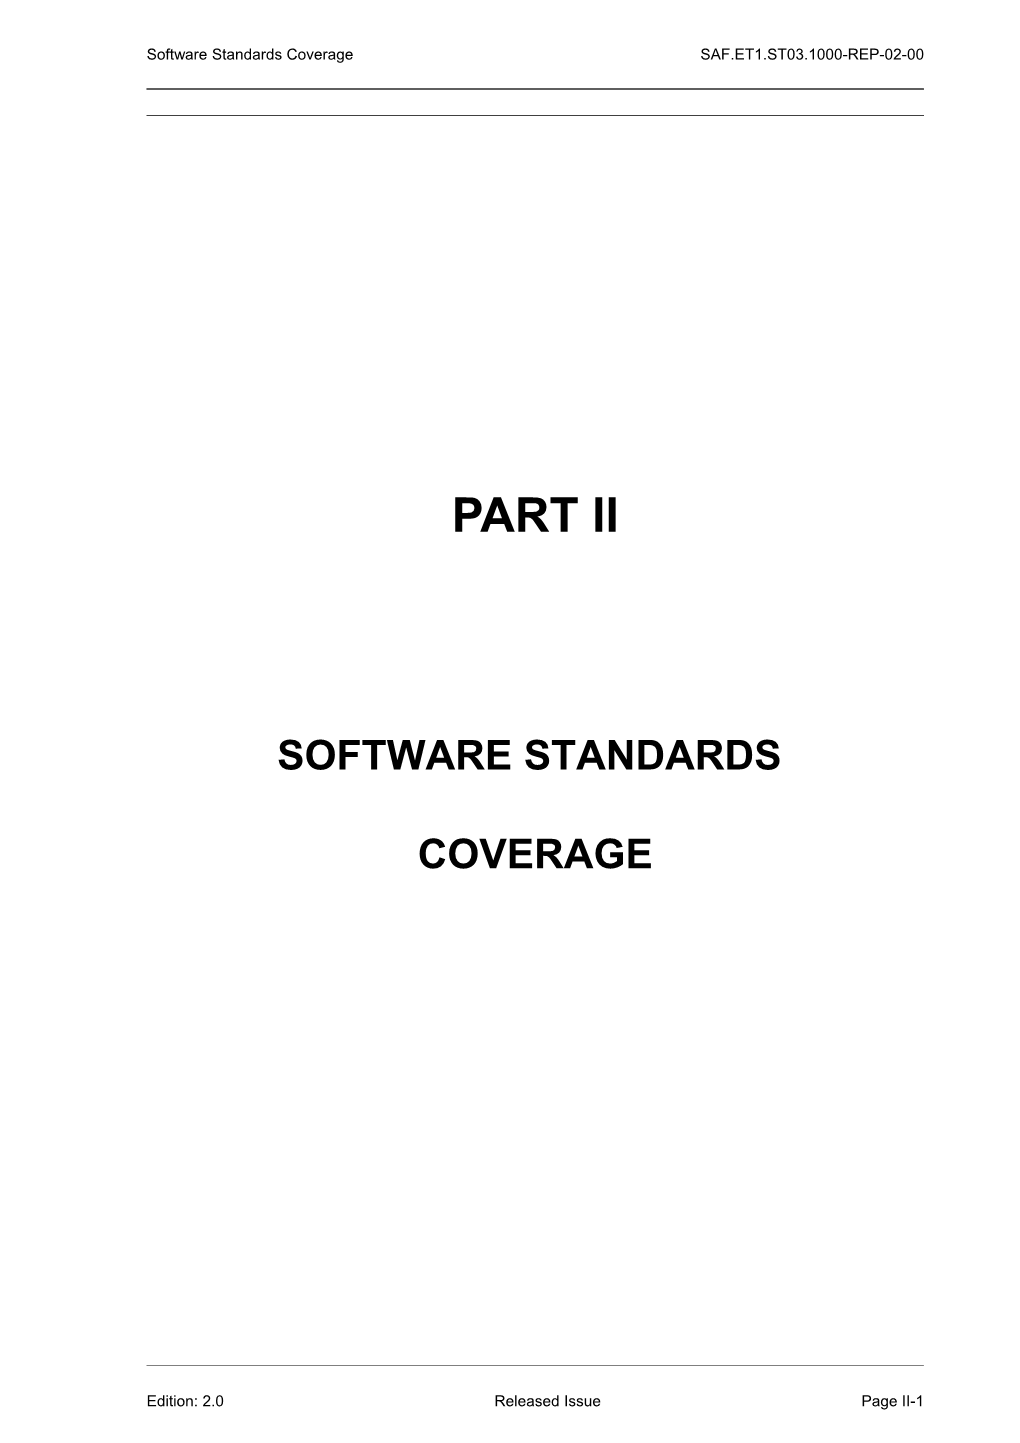 Software Standards Coveragesaf.ET1.ST03.1000-REP-02-00